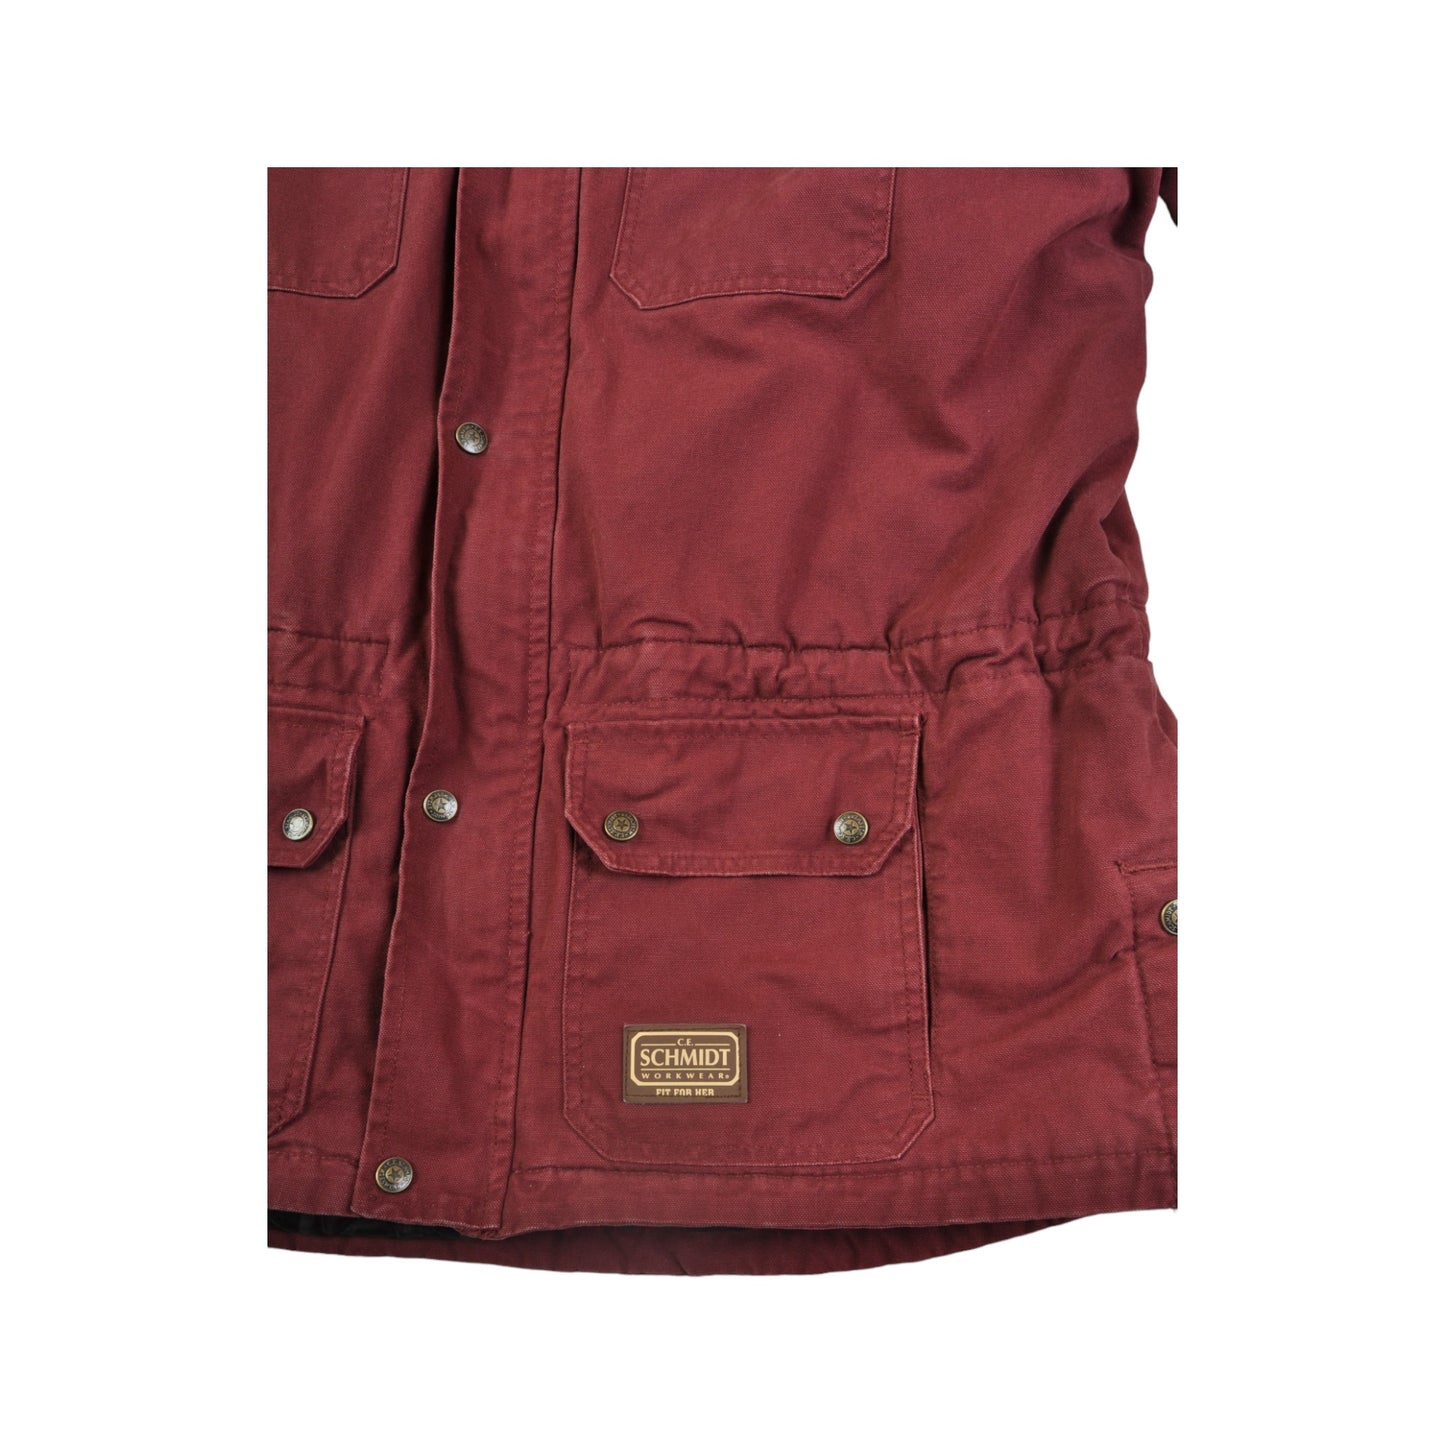 Vintage Schmidt Workwear Hooded Jacket Blanket Lined Maroon Ladies XXL